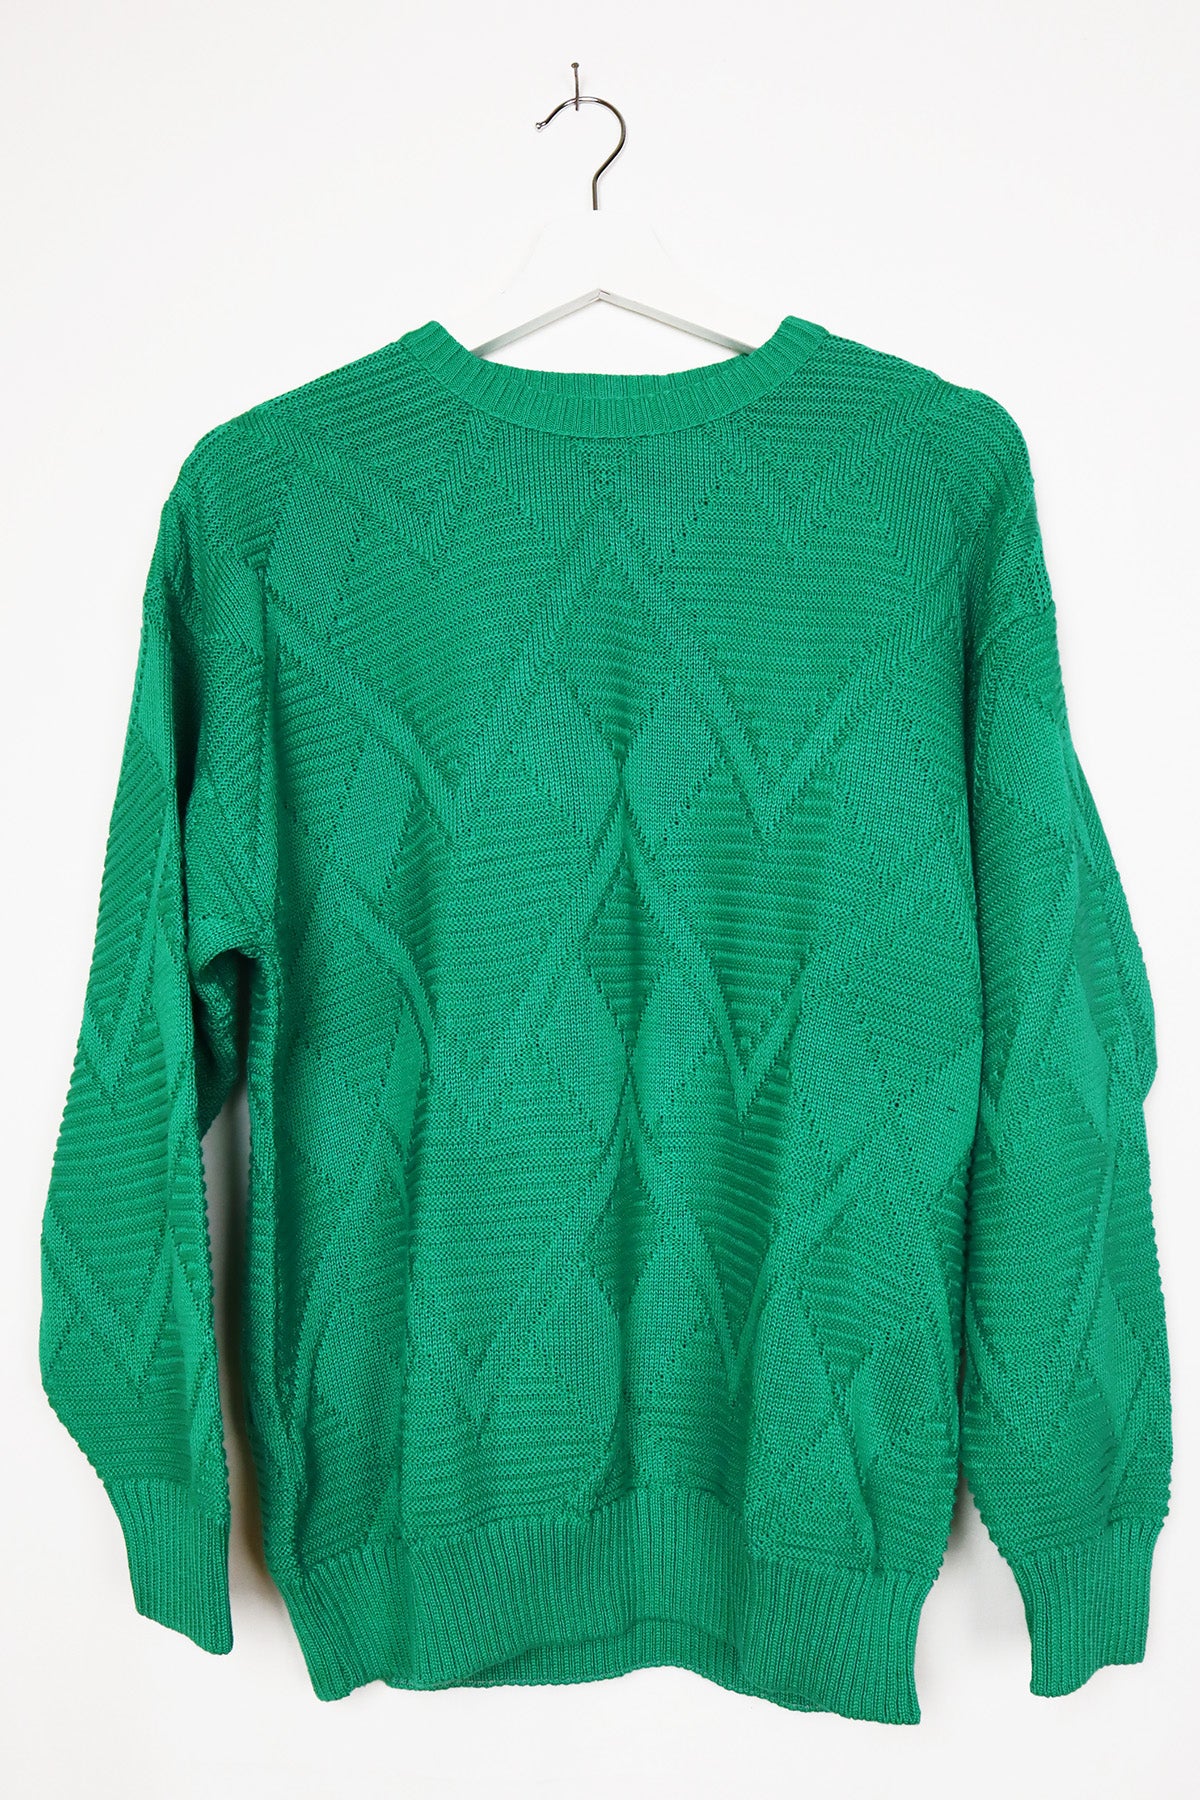 Unisex Pullover  Vintage Grün ( Gr. M und Gr. L )